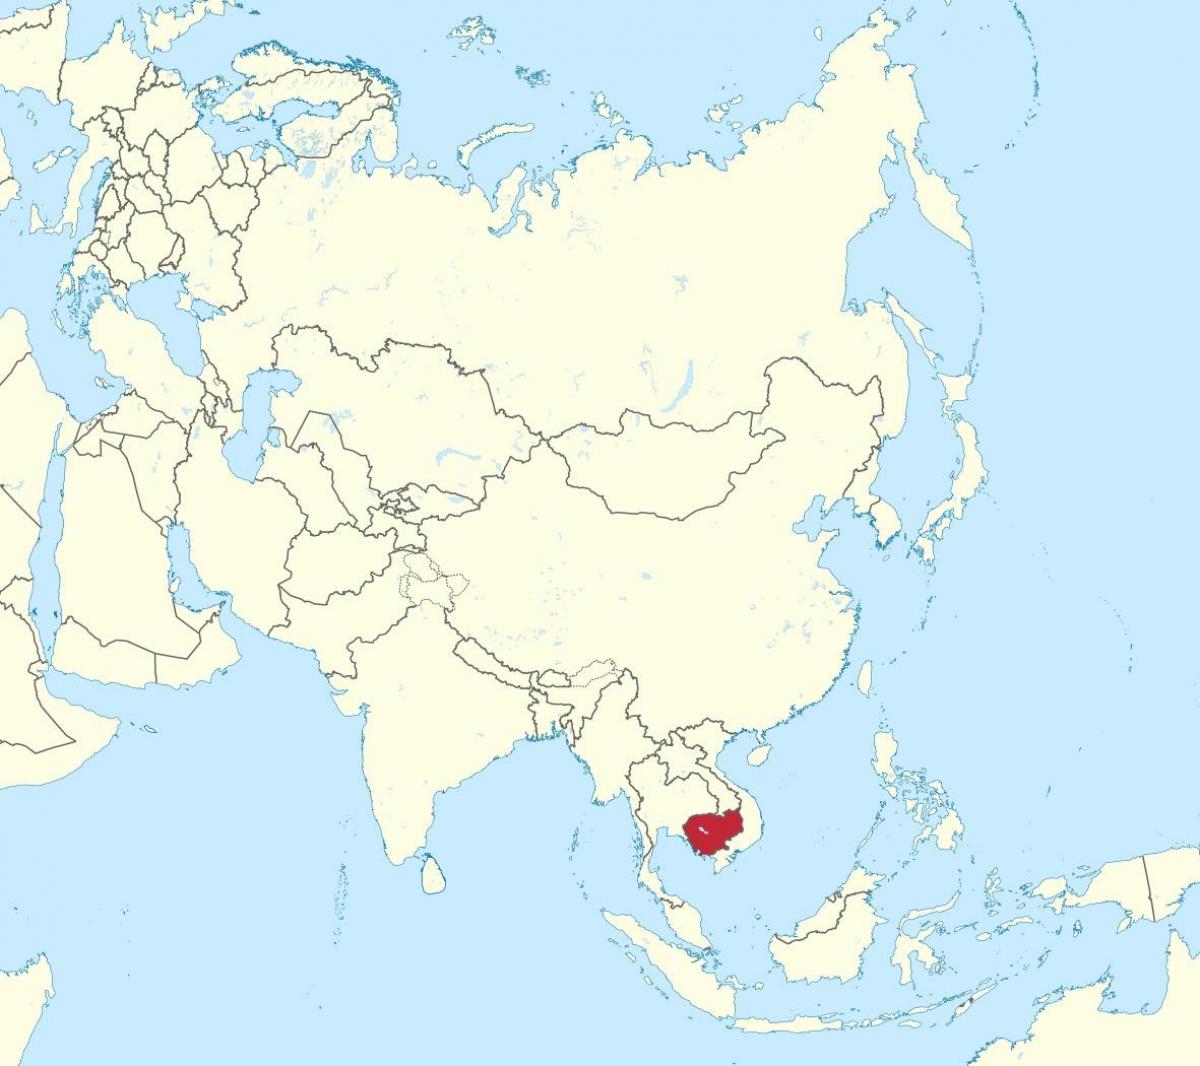 Mapa Kambodża w Azji